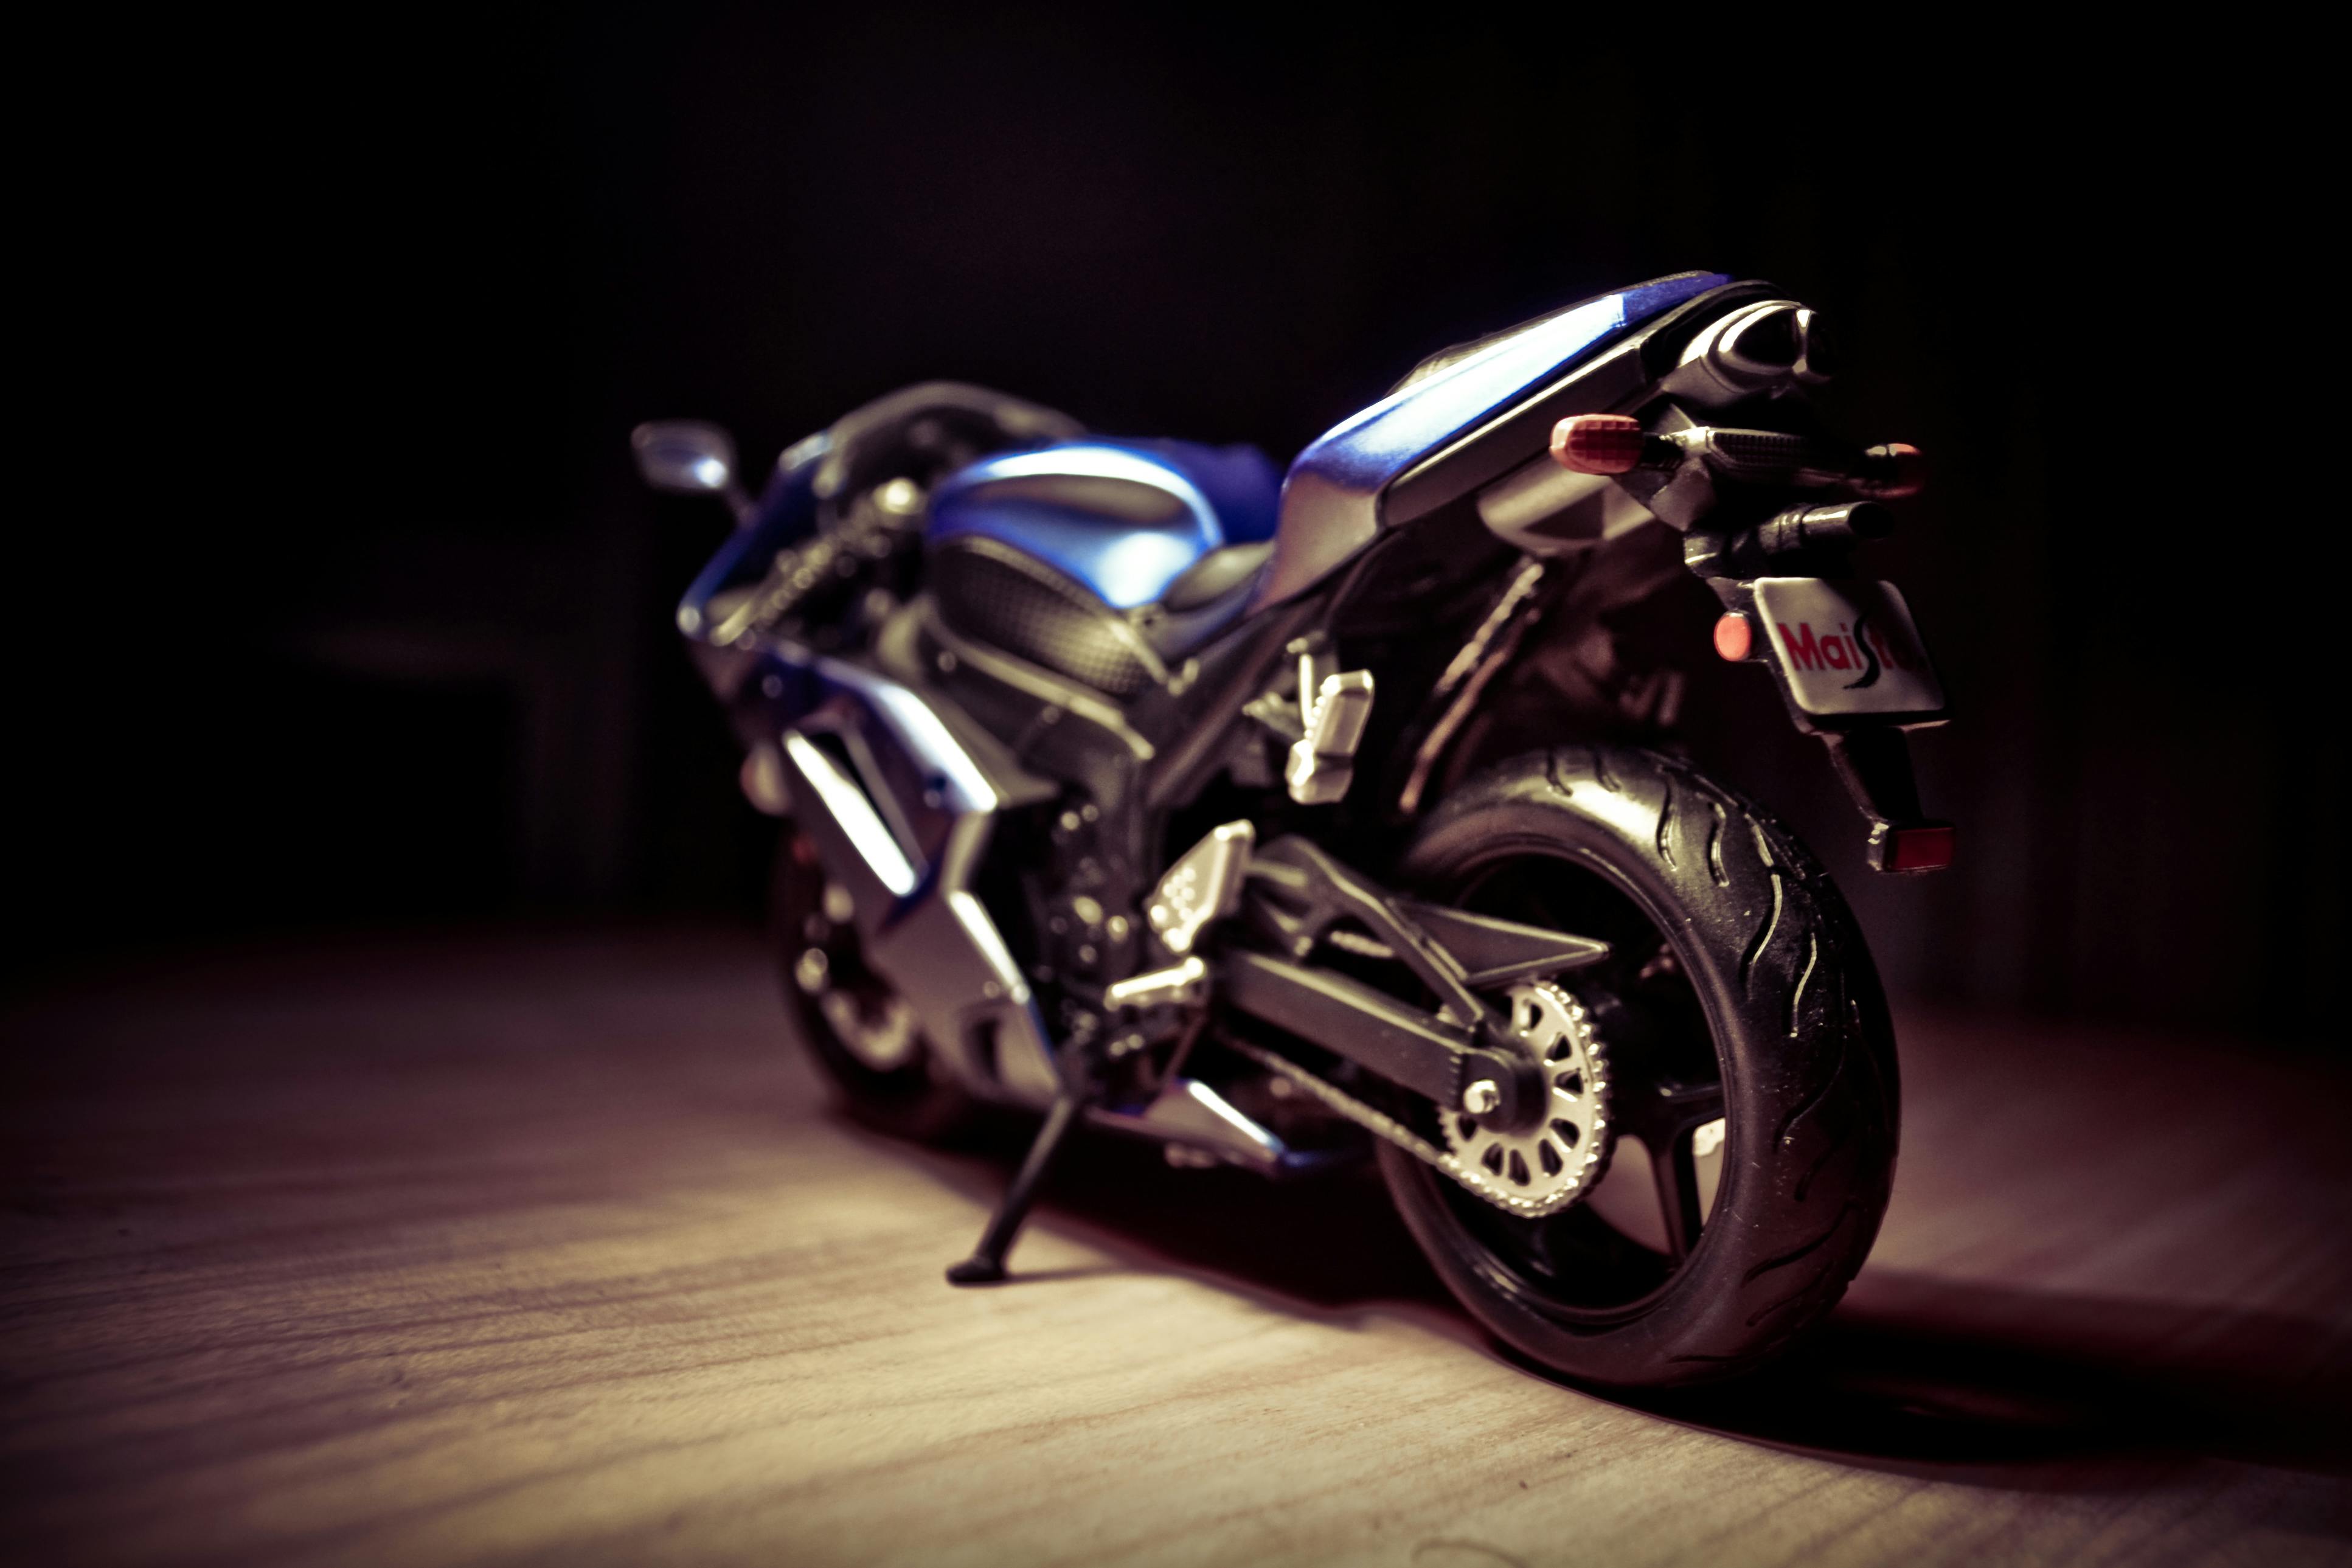 Motocicleta Corrida Yamaha R1 - Imagens grátis no Pixabay - Pixabay